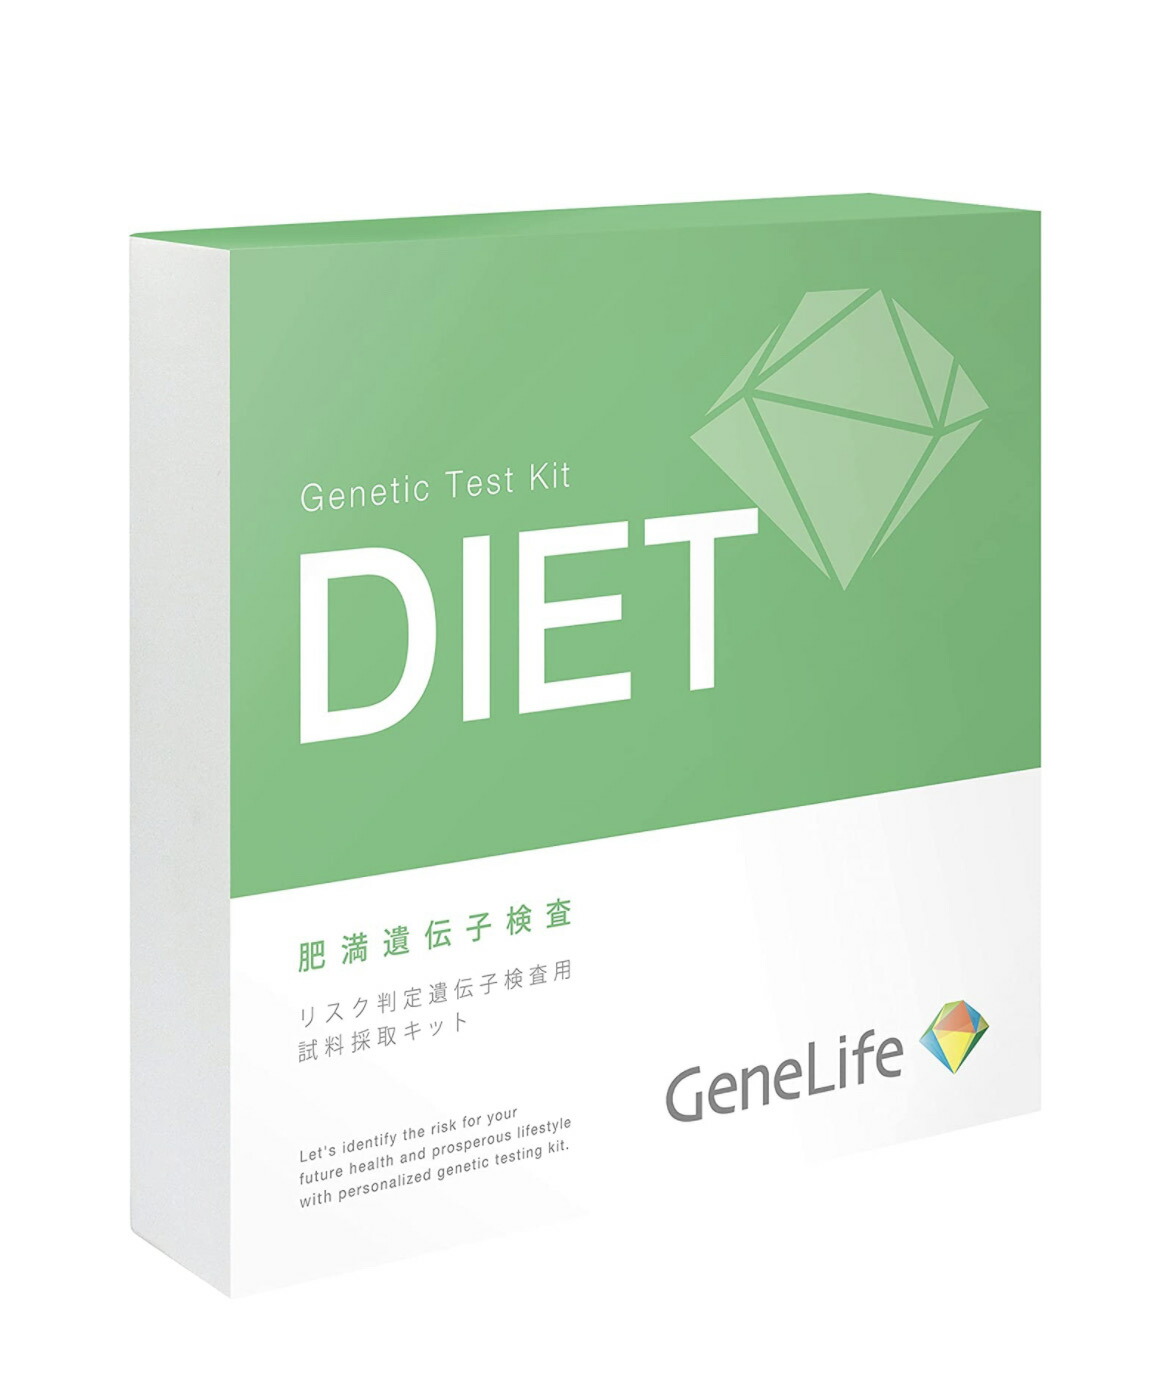 GeneLife GeneLife DIET 肥満遺伝子検査 遺伝子検査キットの商品画像